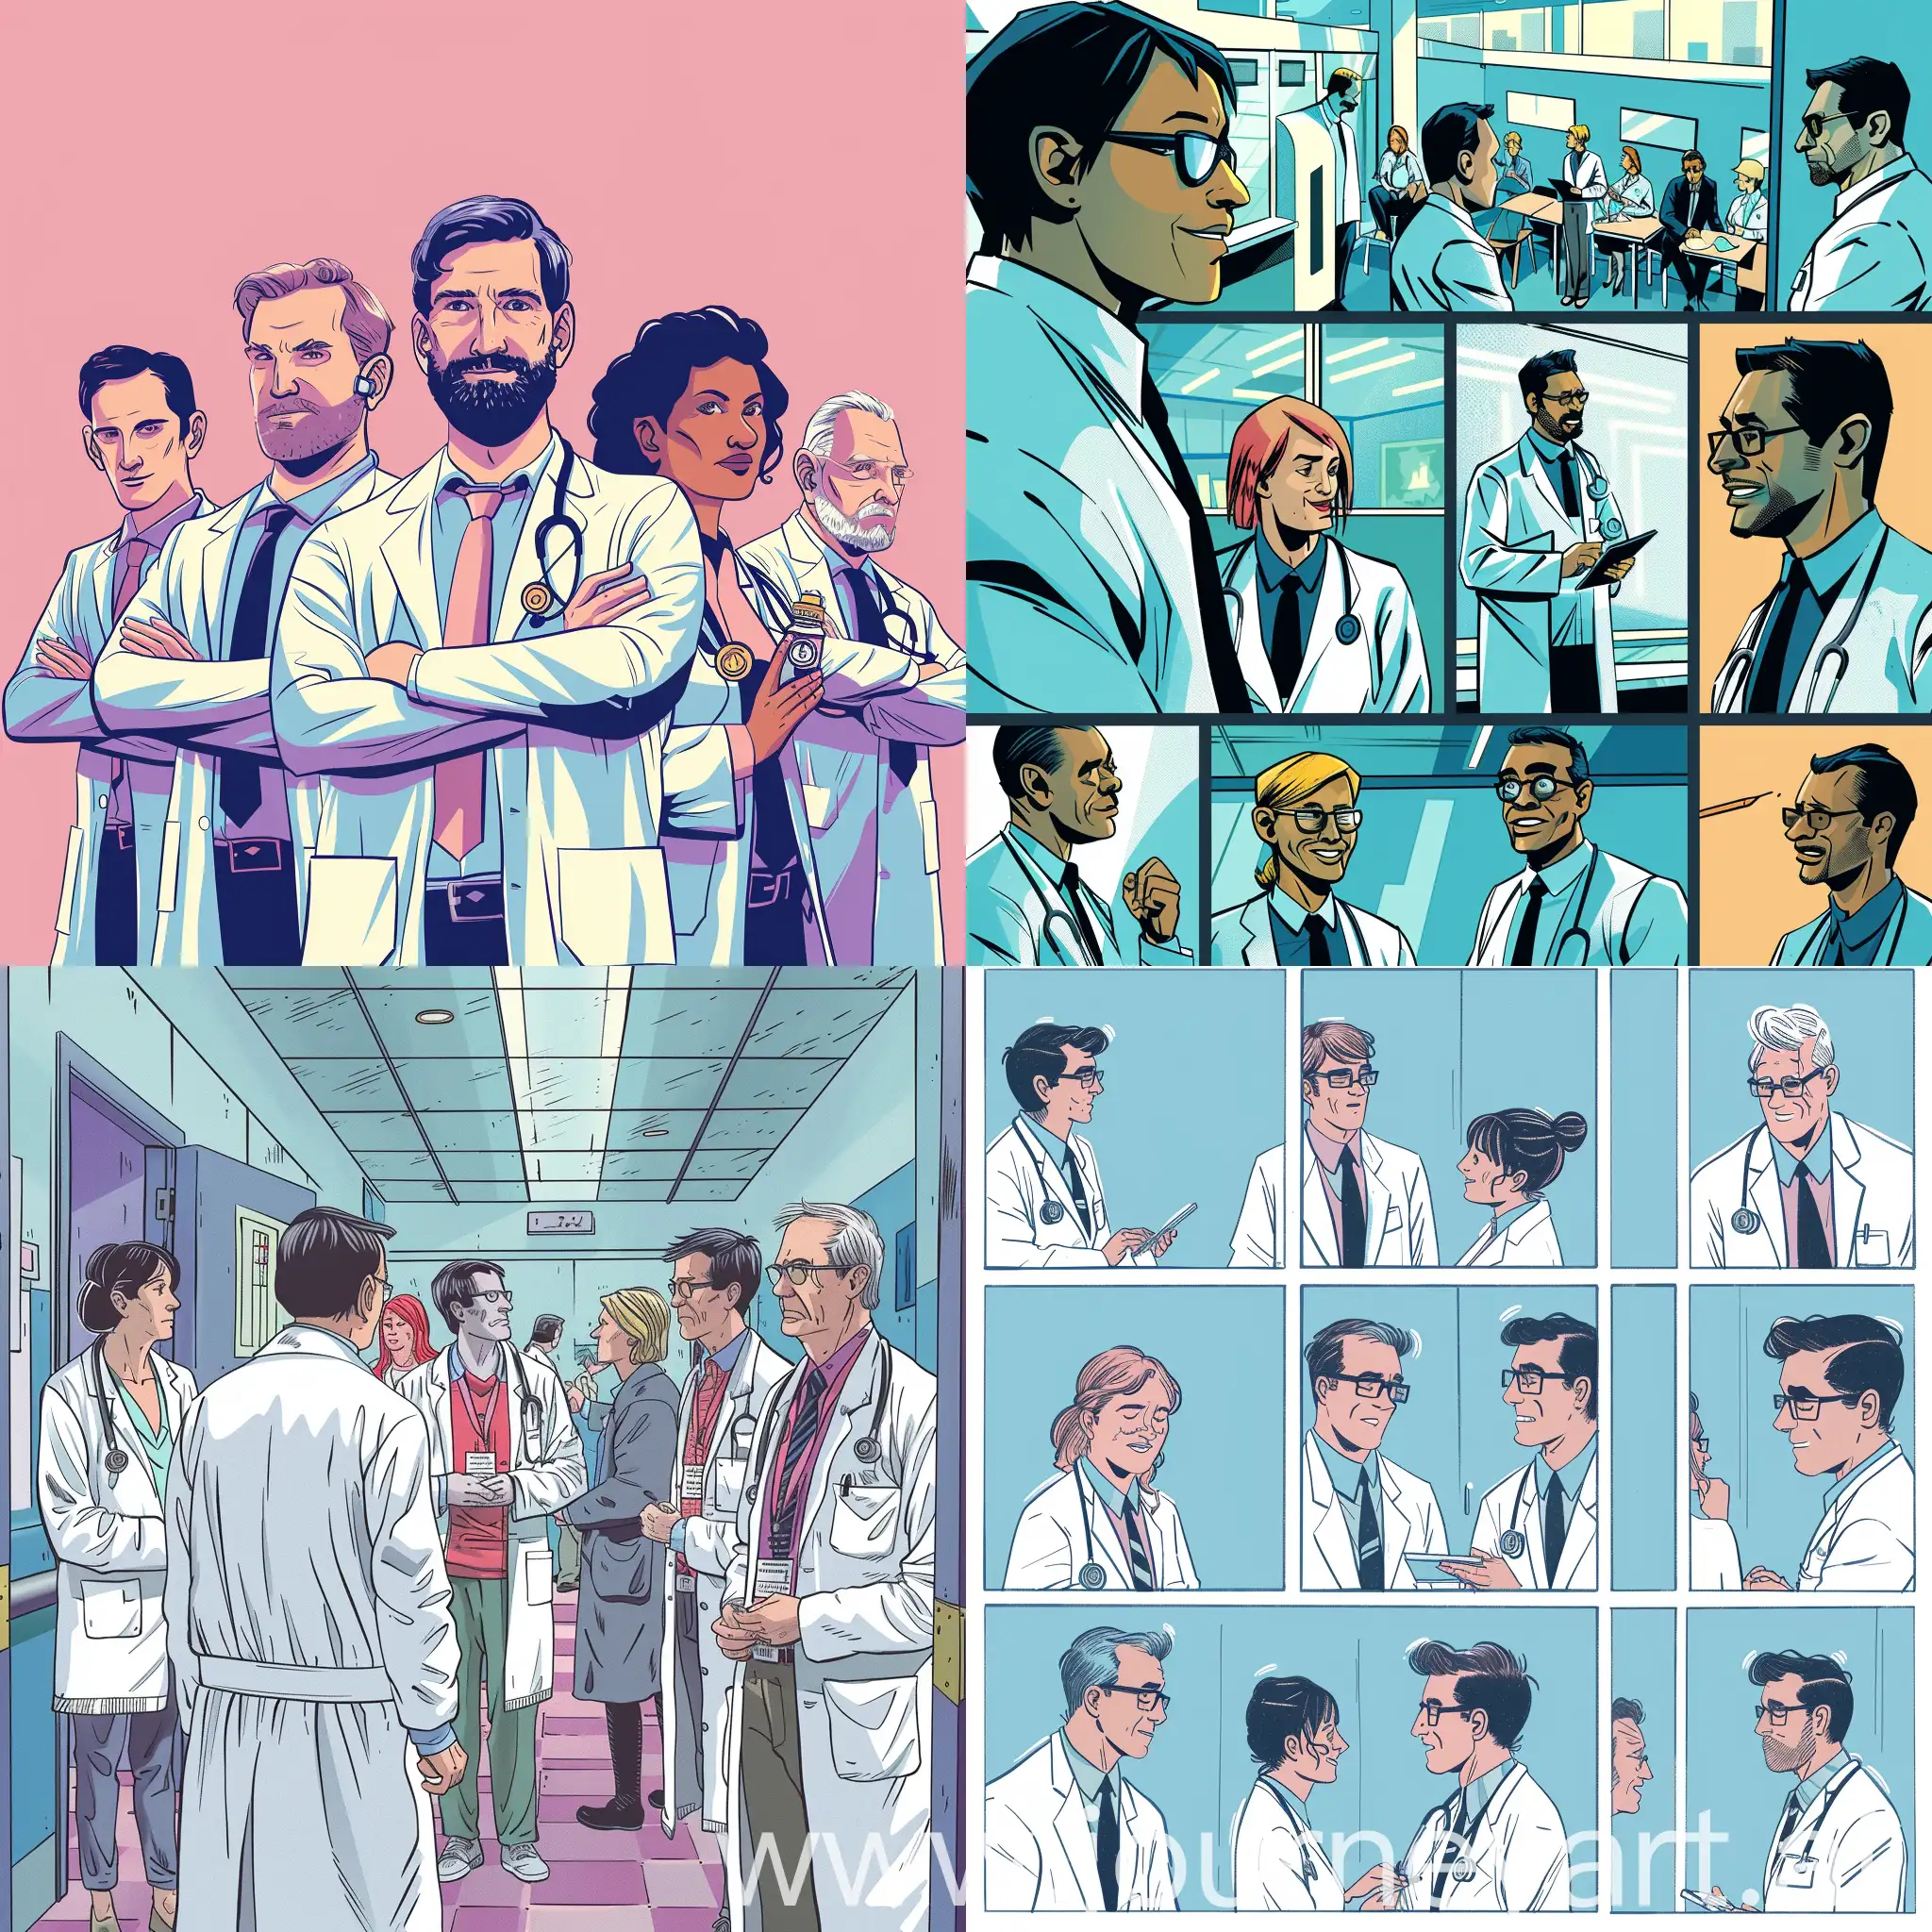 Нариуй комикс про врачей которые собираются на конференцию по онкологии